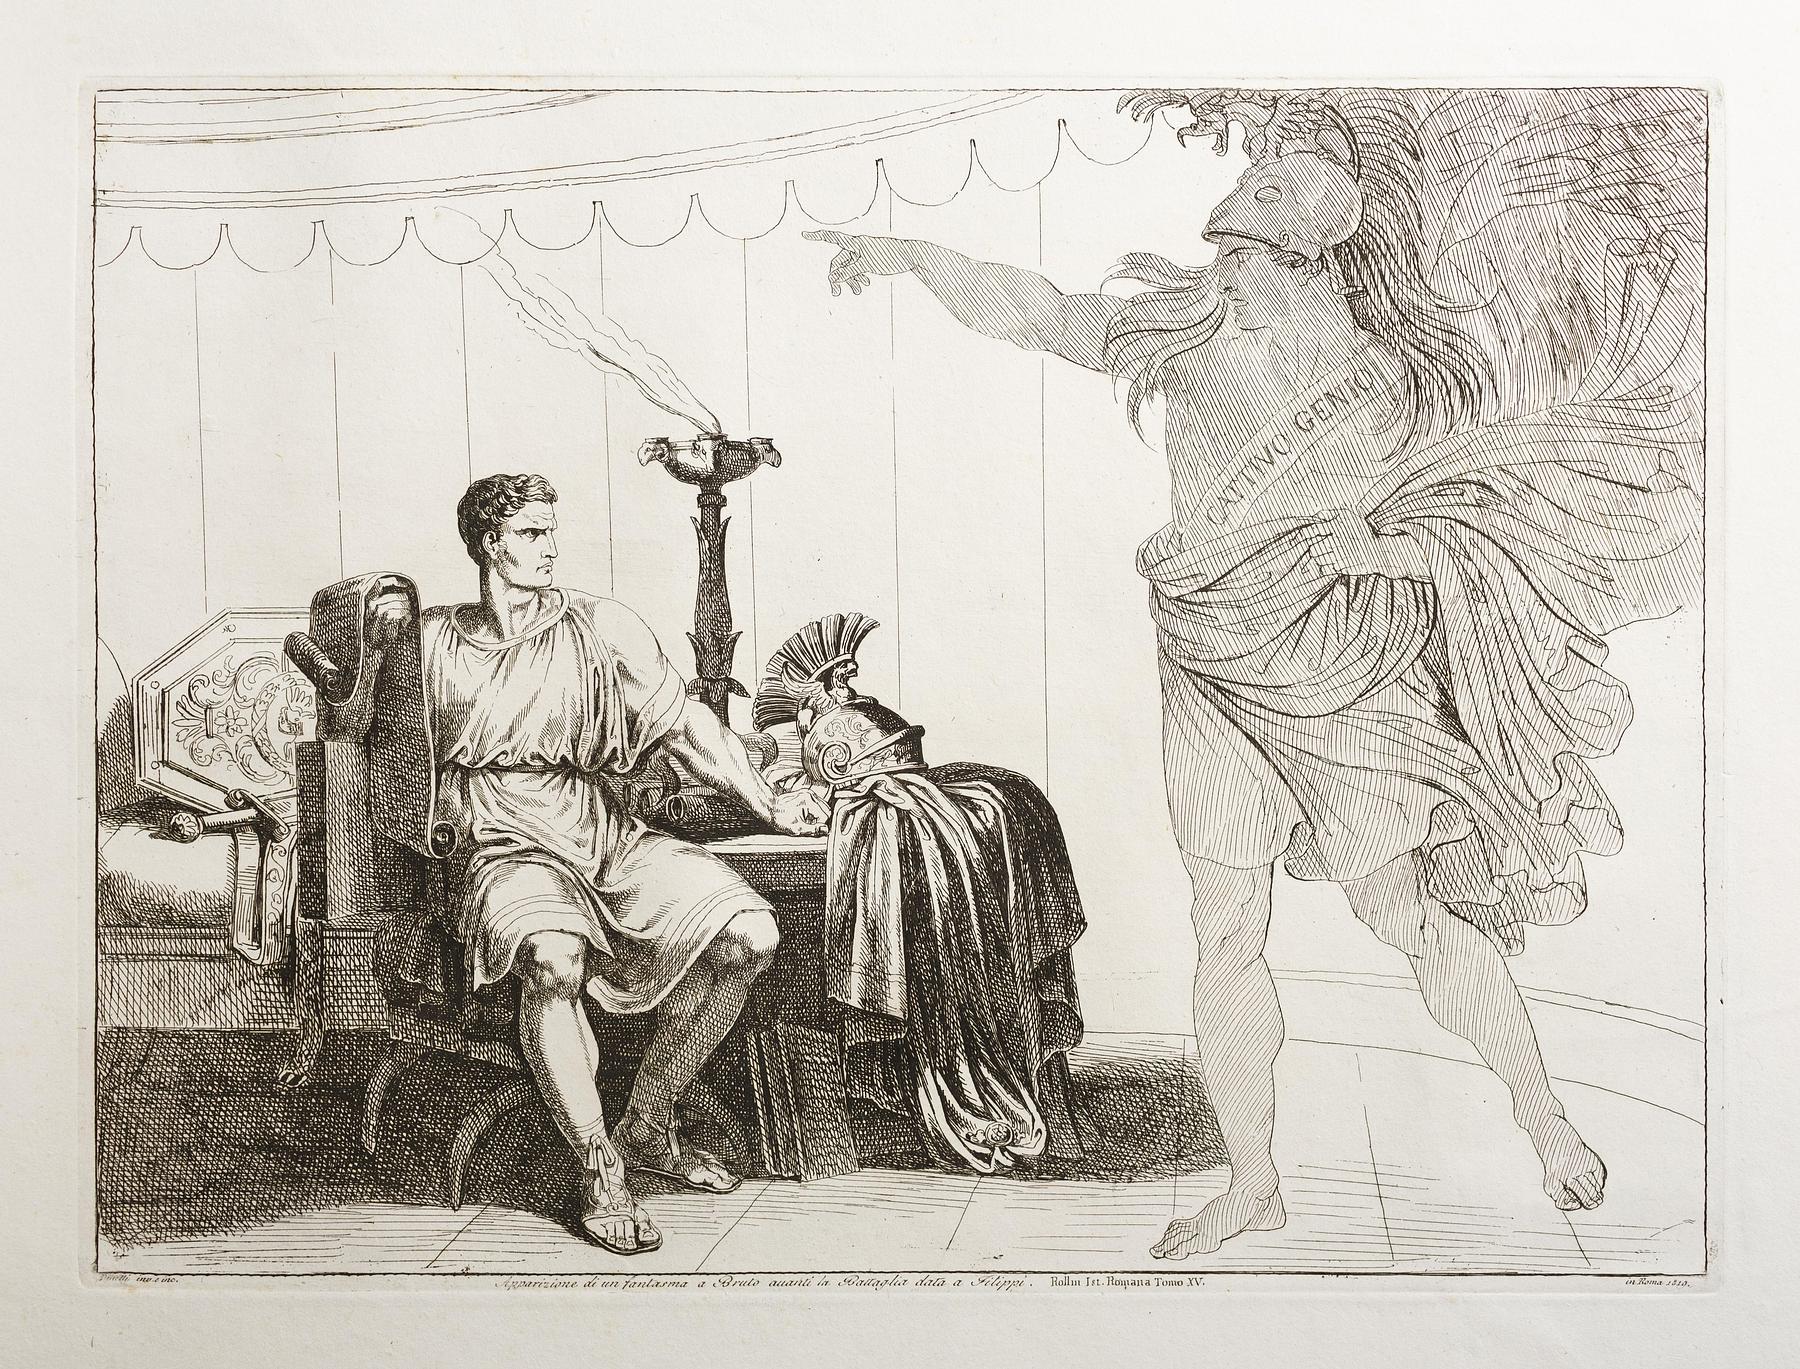 Cæsars spøgelse viser sig for Brutus før Slaget ved Filippi, E943,98